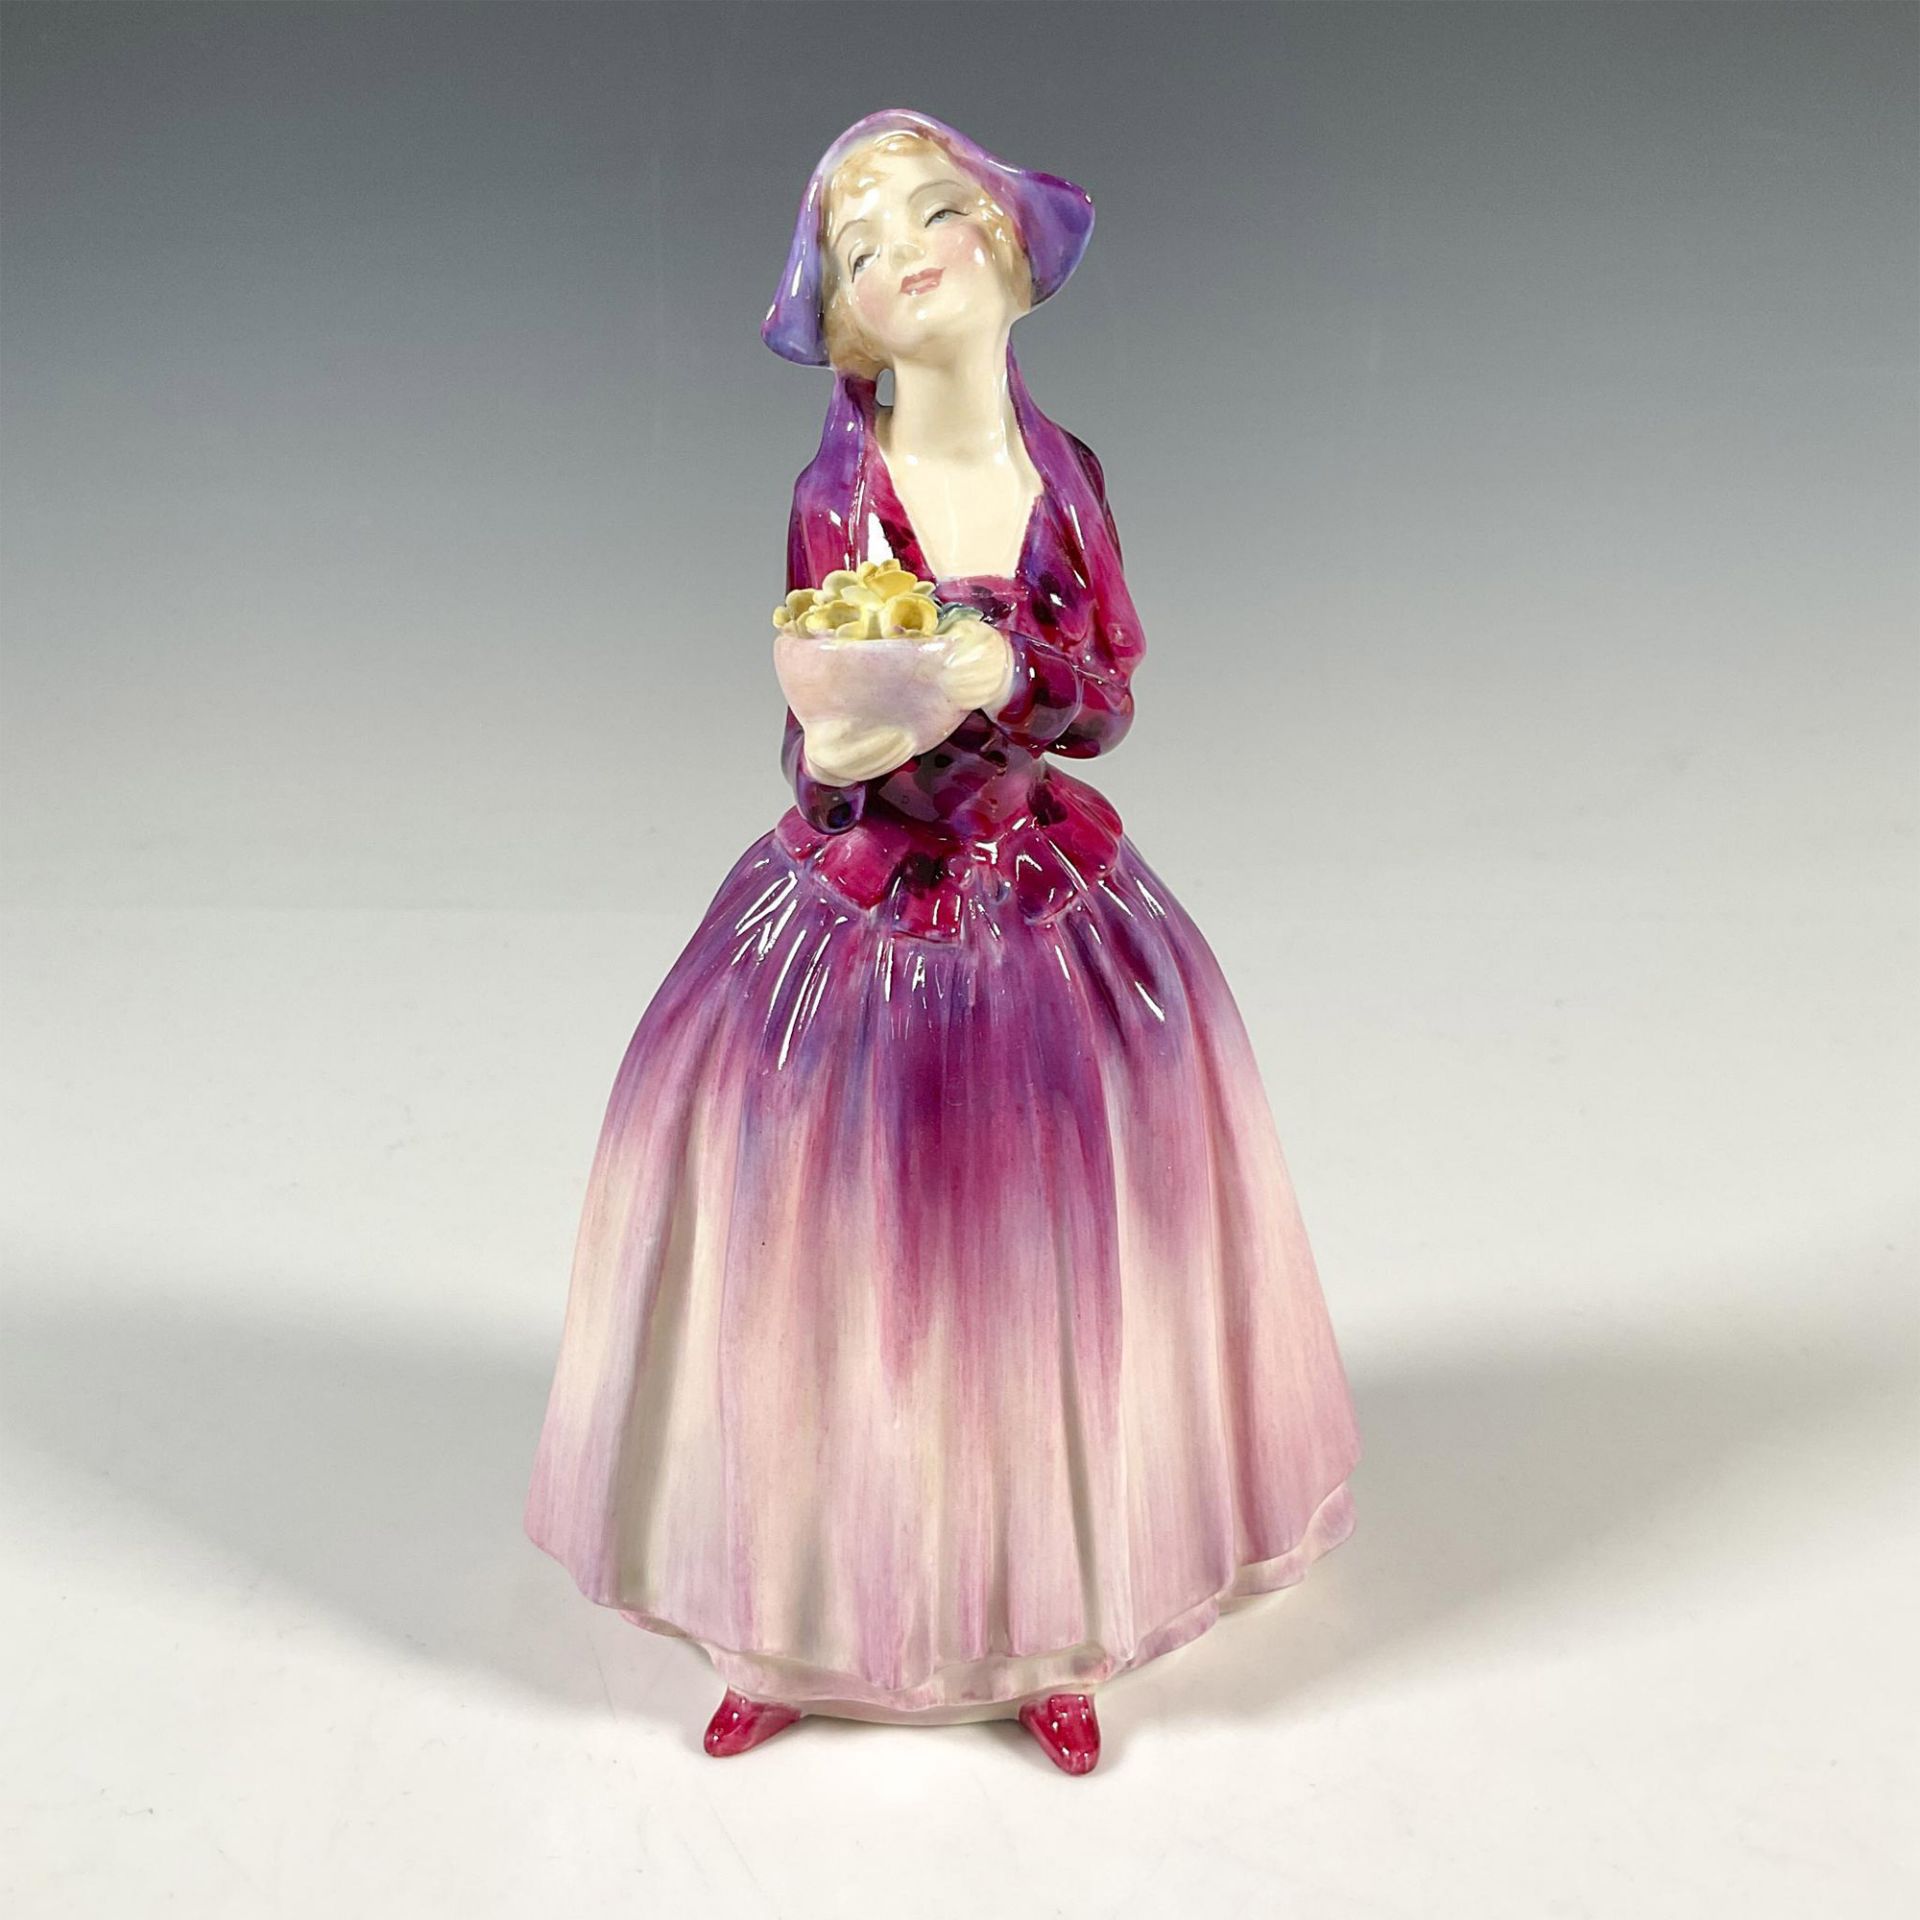 Dorcas HN1558 - Royal Doulton Figurine